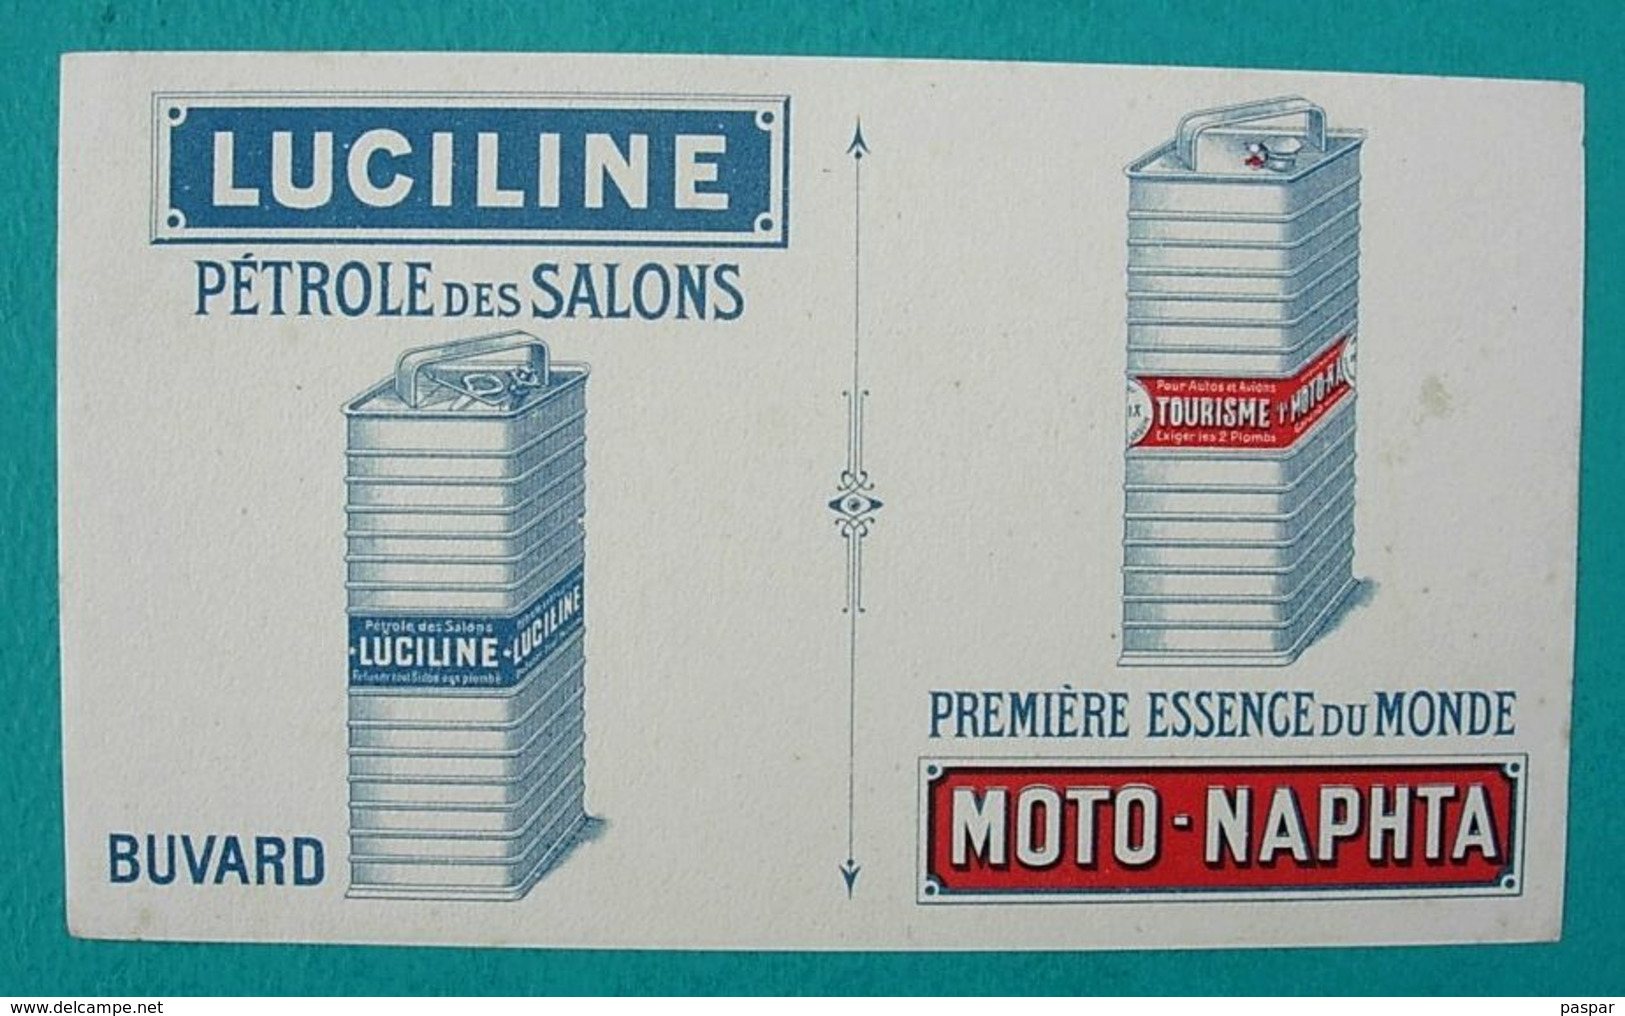 BUVARD Ancien Publicitaire - Pétrole LUCILINE, Essence Moto-Naphta - Automotive